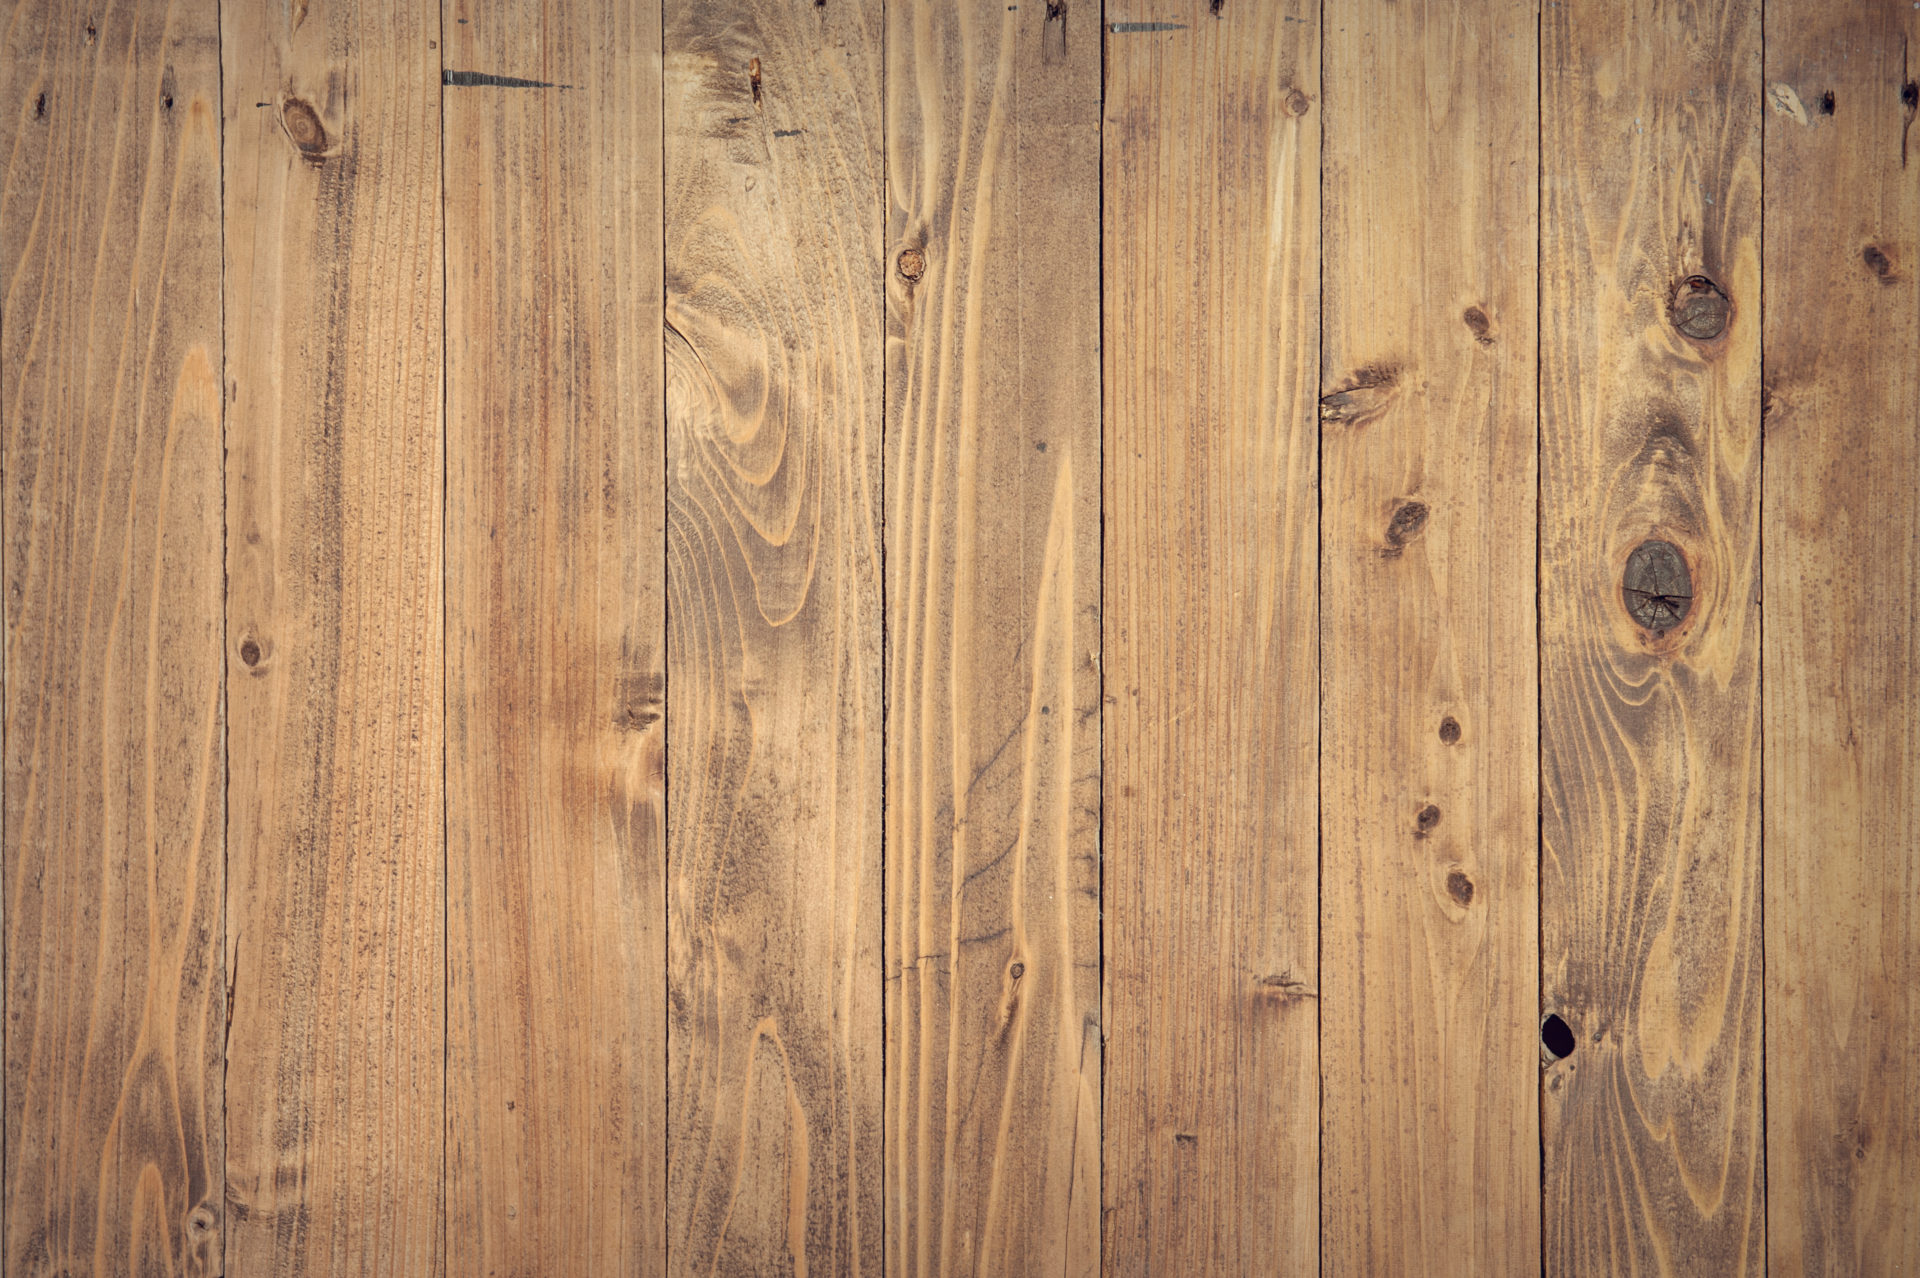 Hardwood vs Laminate Flooring | Just Hardwood Floors